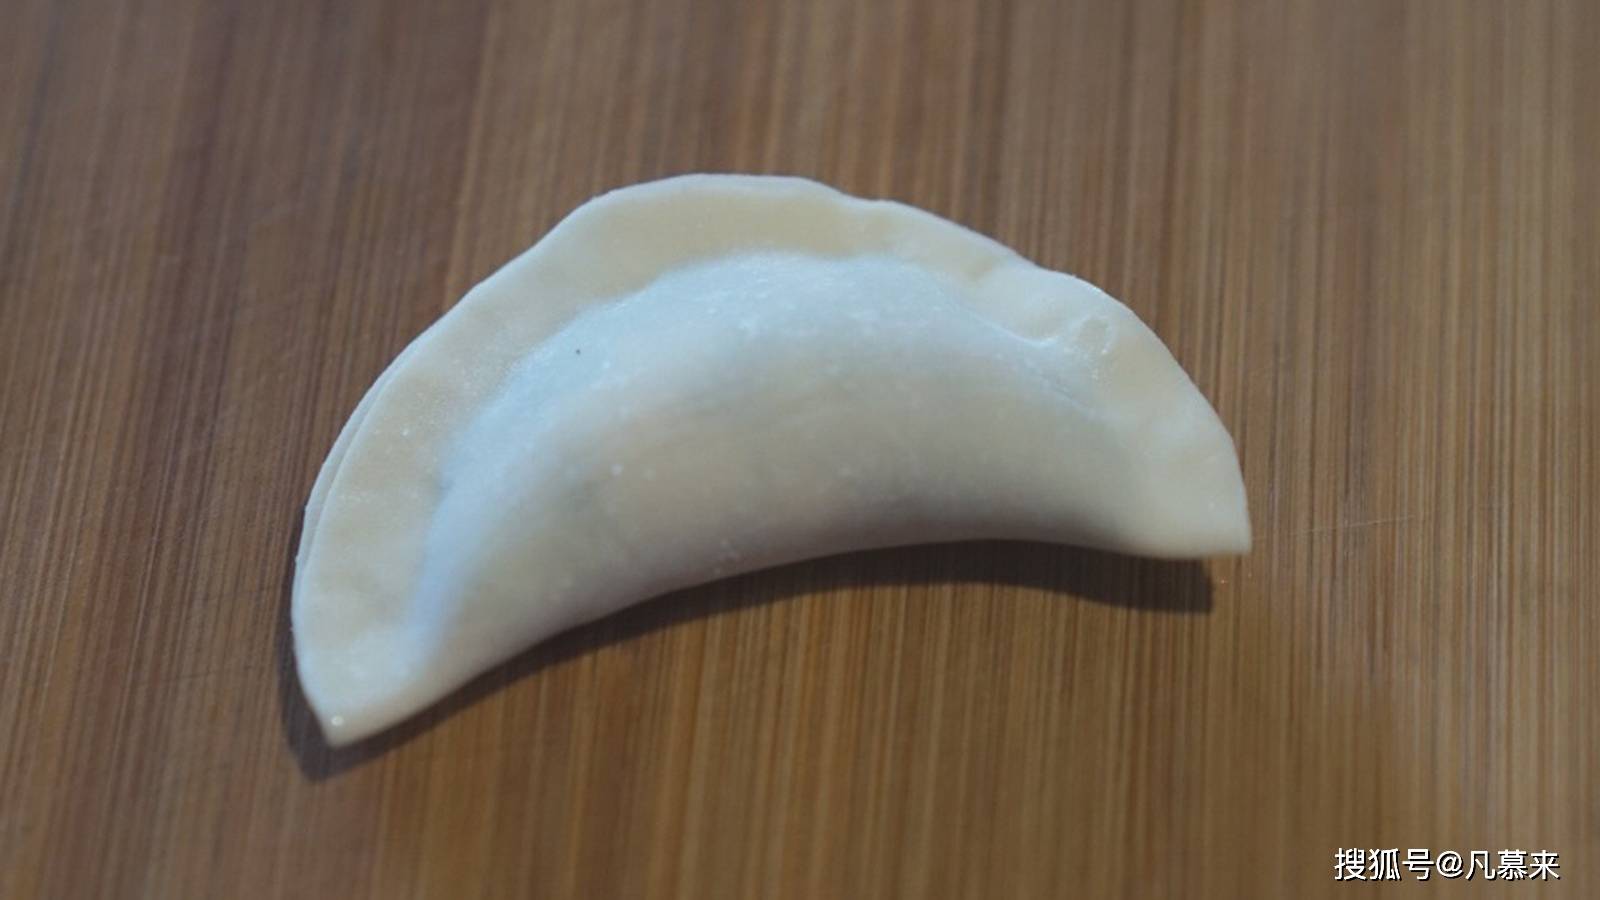 饺子皮不是圆形的，是梯形的薄片，薄出来就是这样的元宝形状的饺子，过年包饺子寓五谷丰登，招财进宝。